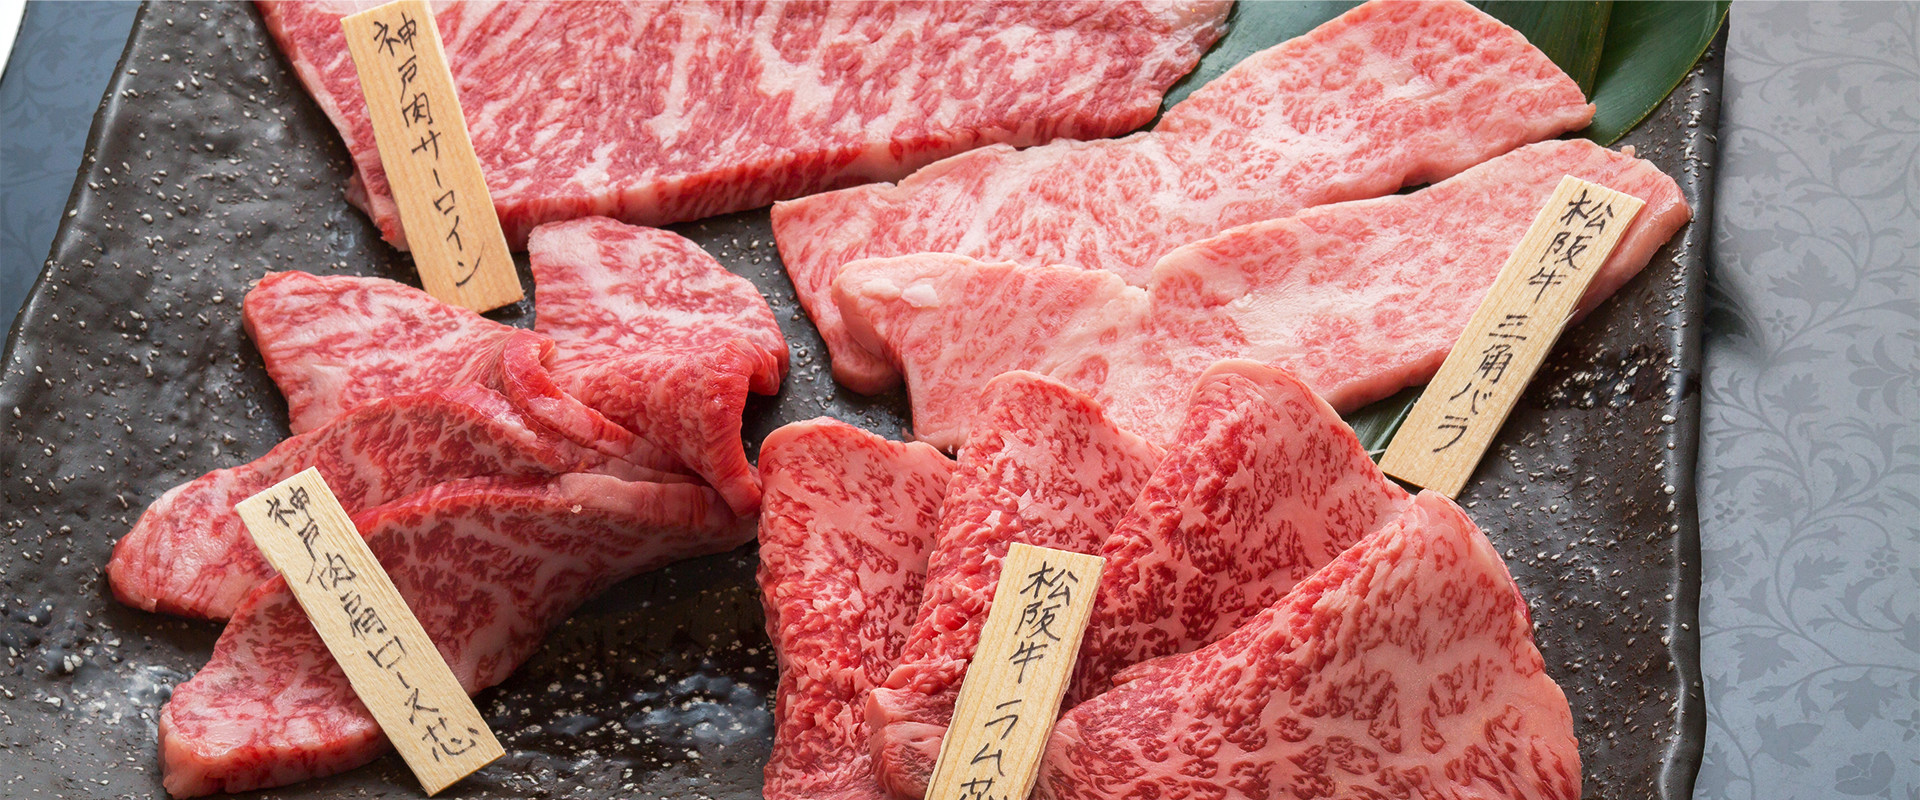 「「田村牛」「神戸牛」の中でも血統にこだわり抜いた本当の和牛の美味しさをご堪能ください。